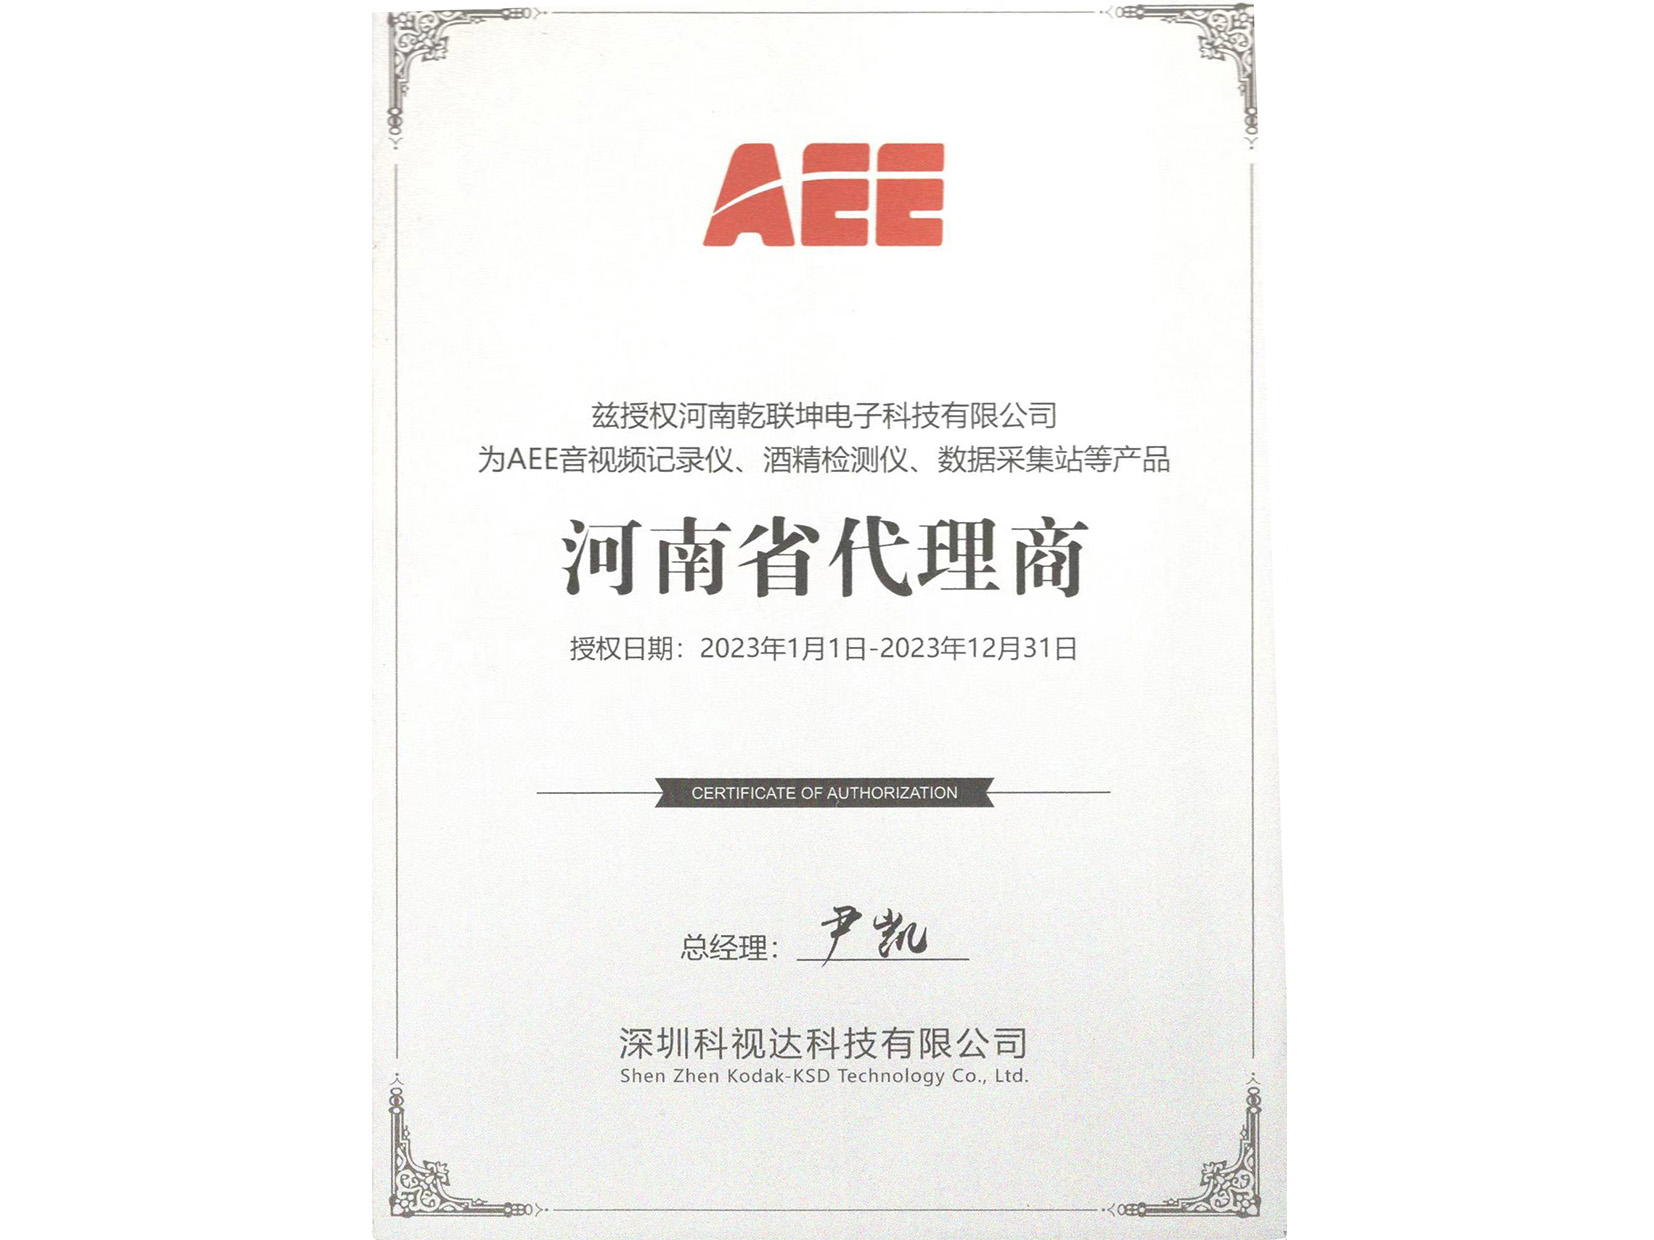 AEE河南省代理商